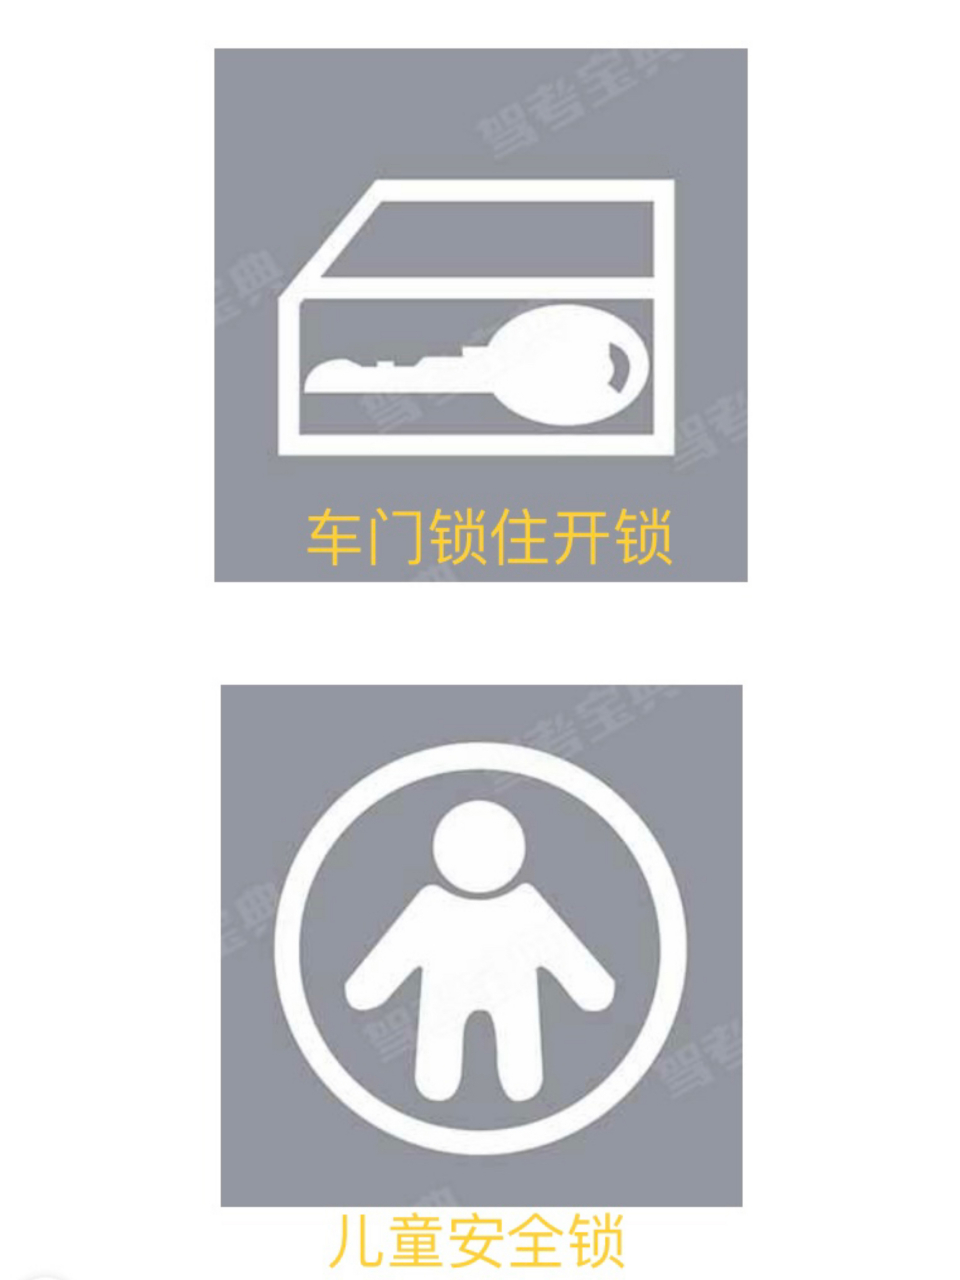 驾考儿童安全锁标志图图片